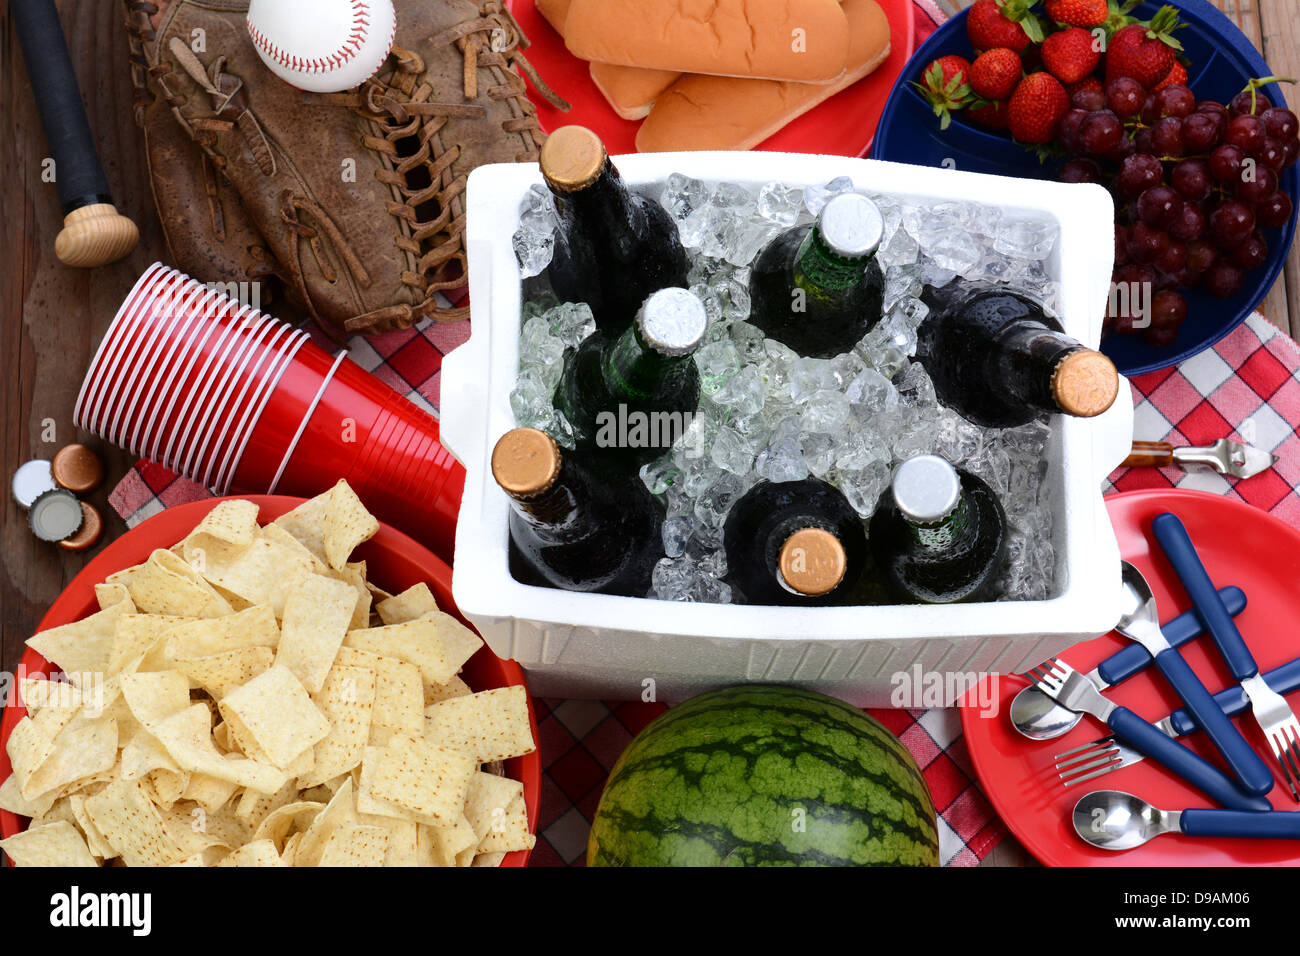 Draufsicht auf einem Picknick-Tisch mit Kühlbox voller Bier, Schüssel mit Chips, Wassermelone, Erdbeeren, Trauben, Mais-Chips. Stockfoto